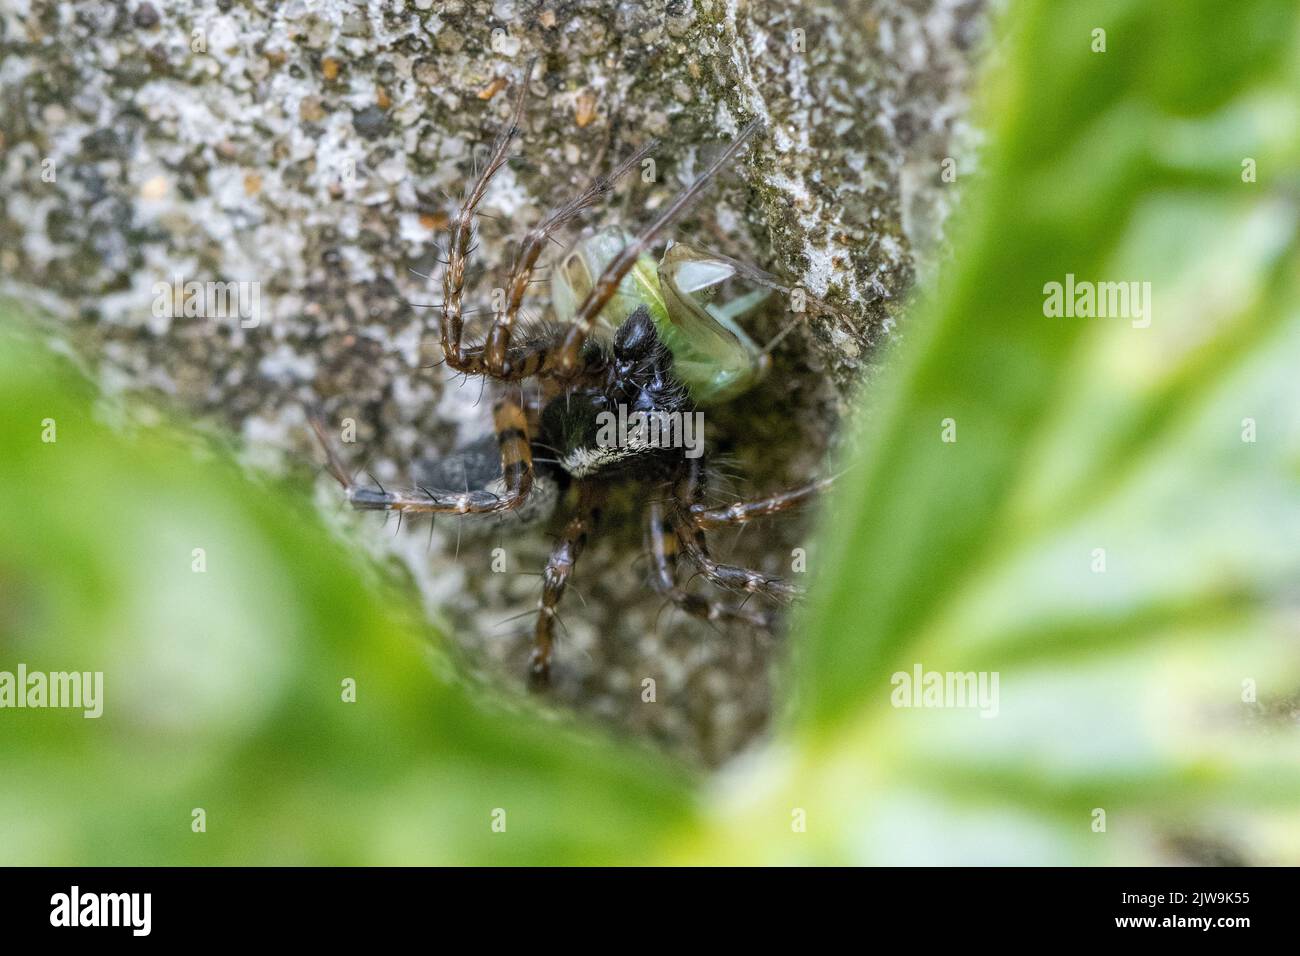 Il maschile Textrix dendiculata è un ragno dentato di tessitore e imbuto, qui con la preda è appena catturata, Yorkshire, Regno Unito fauna selvatica Foto Stock